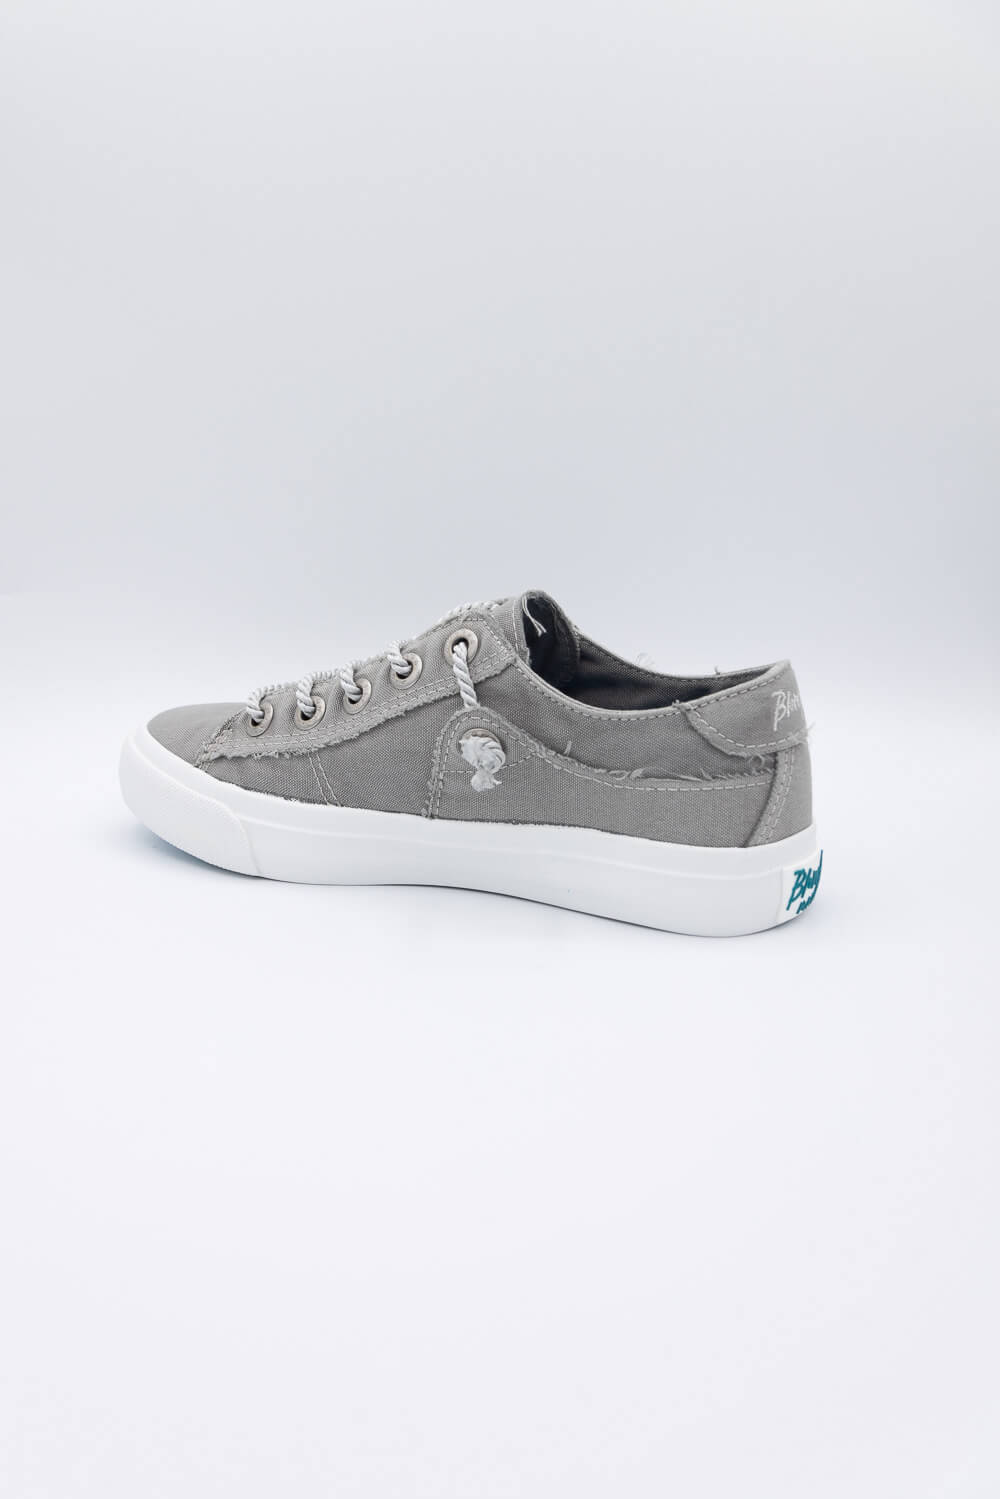 Blowfish Malibu Martina Sneakers for Women in Grey | ZS-1029E-780 